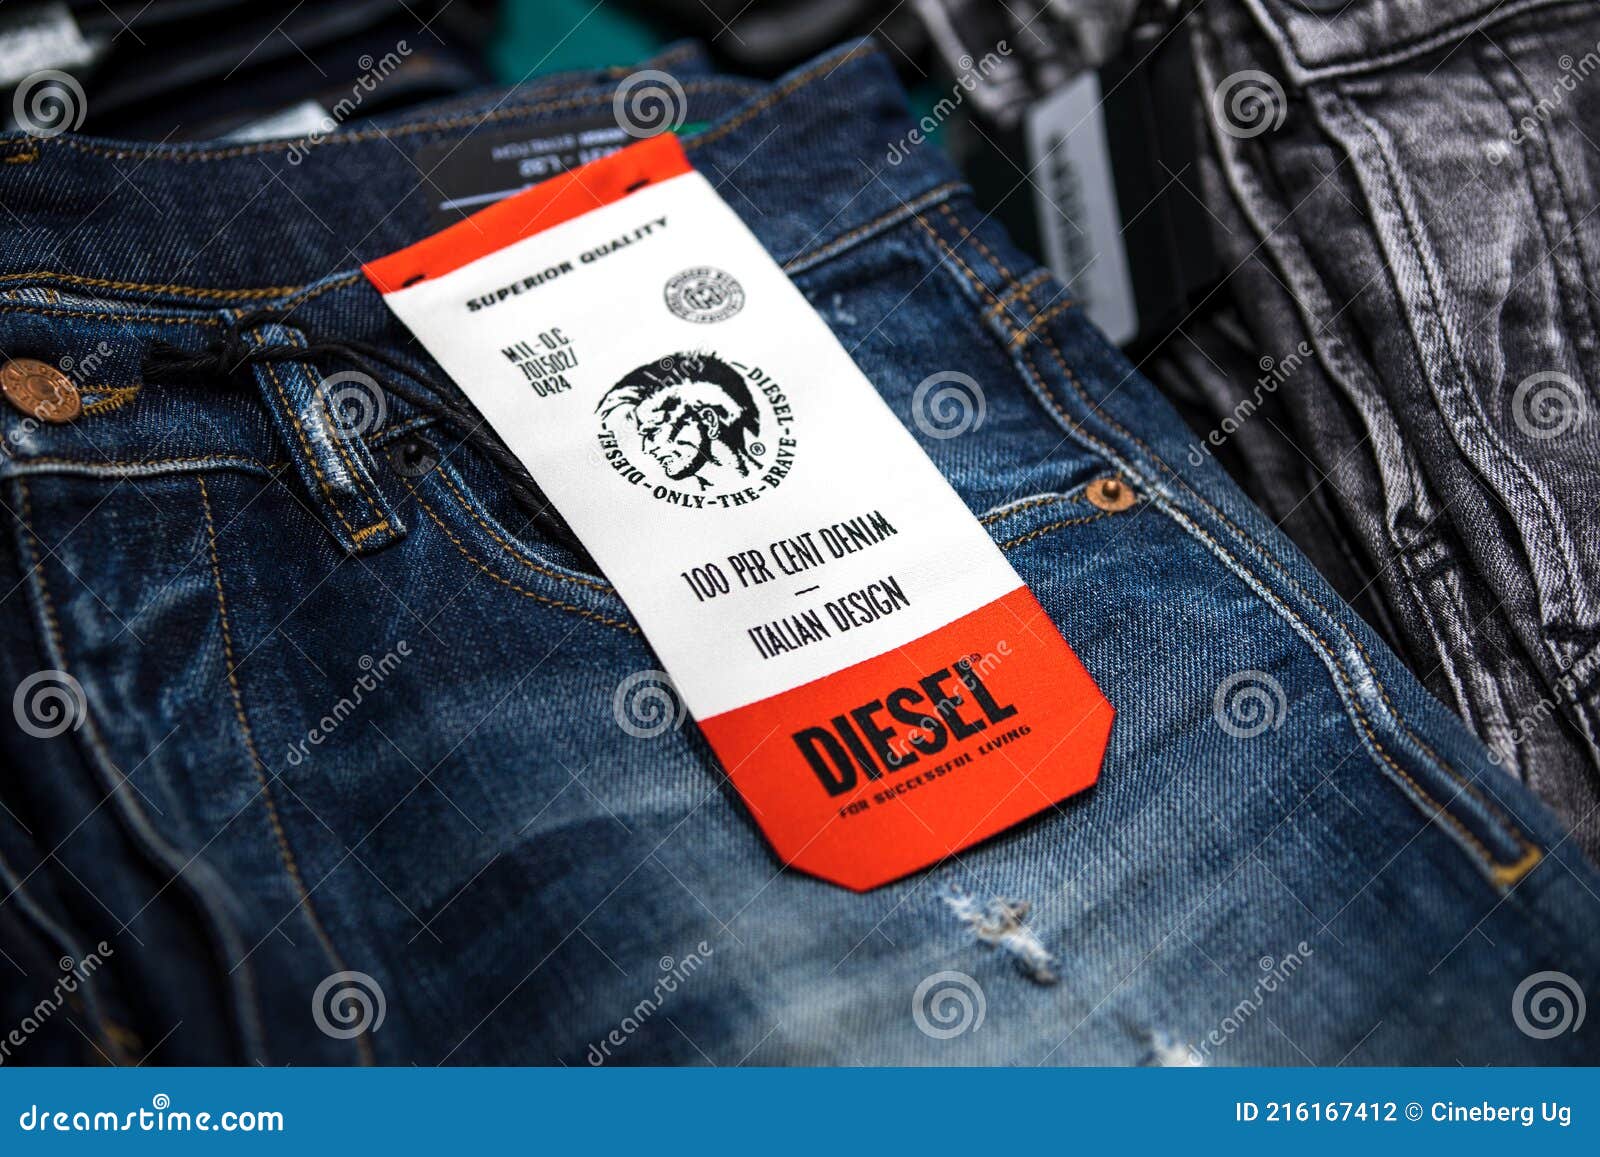 Diesel Luster Jeans Slim Fit in Grey | JEANS.CH